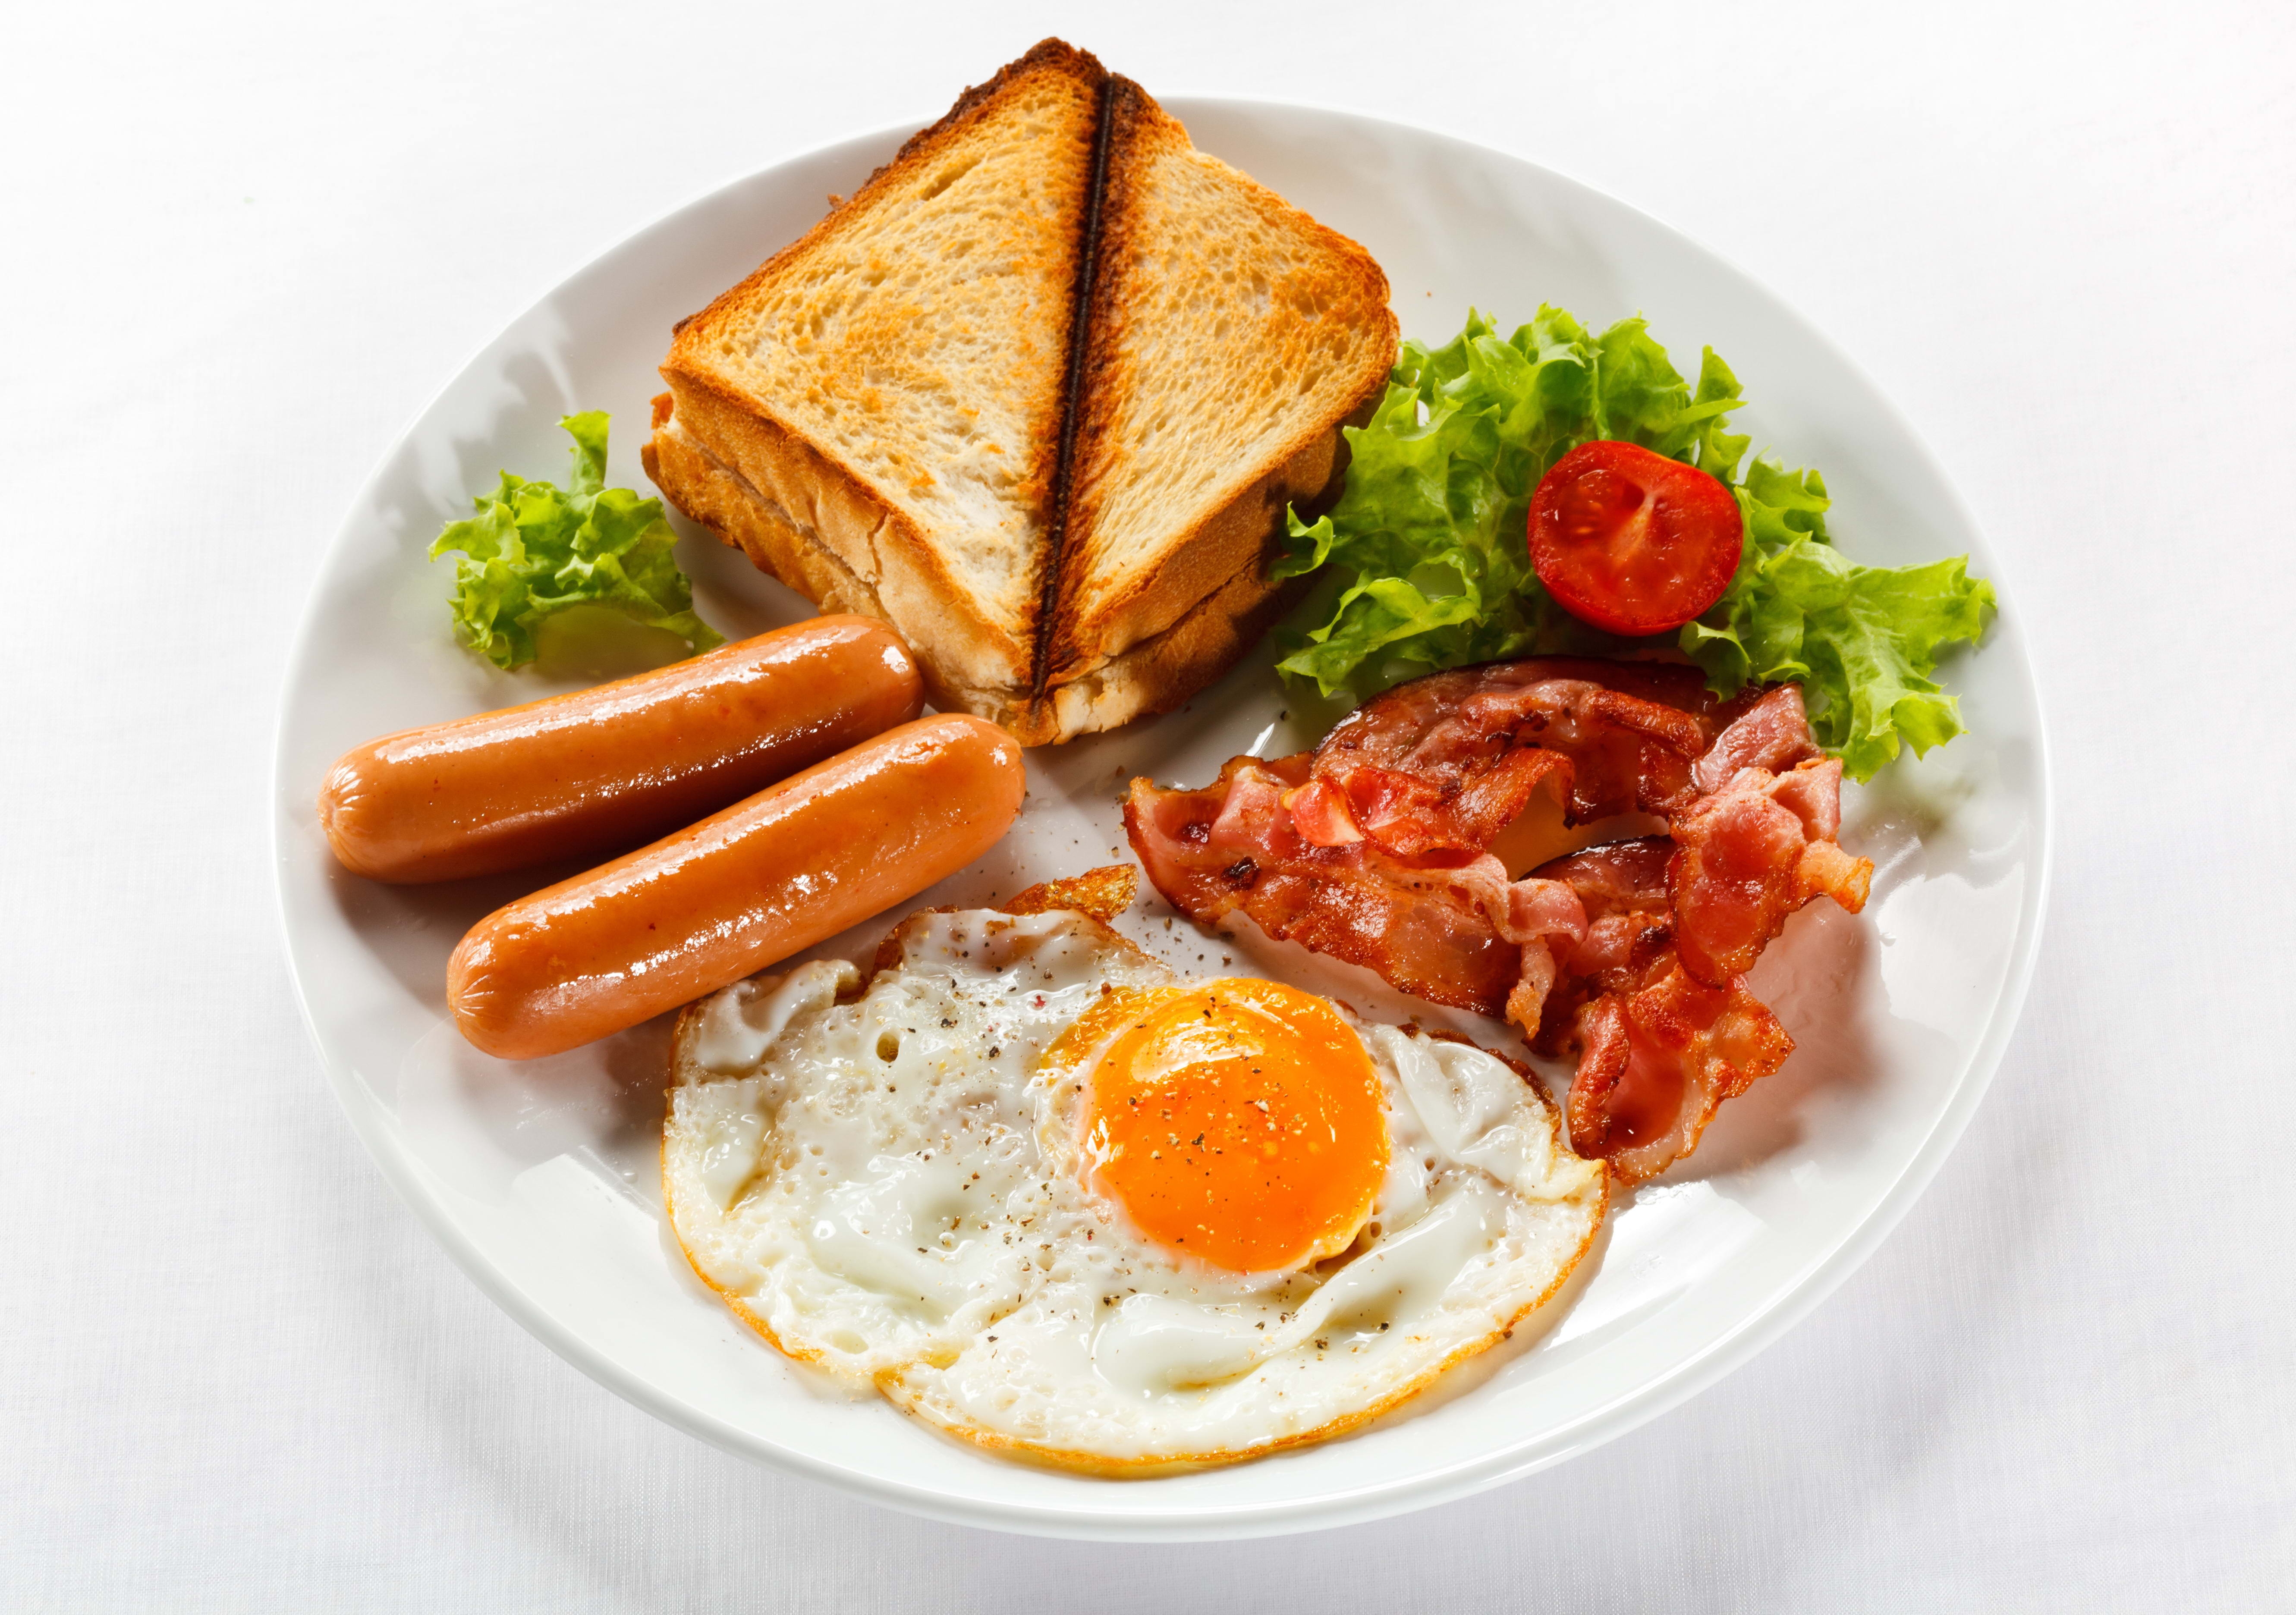 breakfast wallpaper,dish,food,cuisine,meal,full breakfast